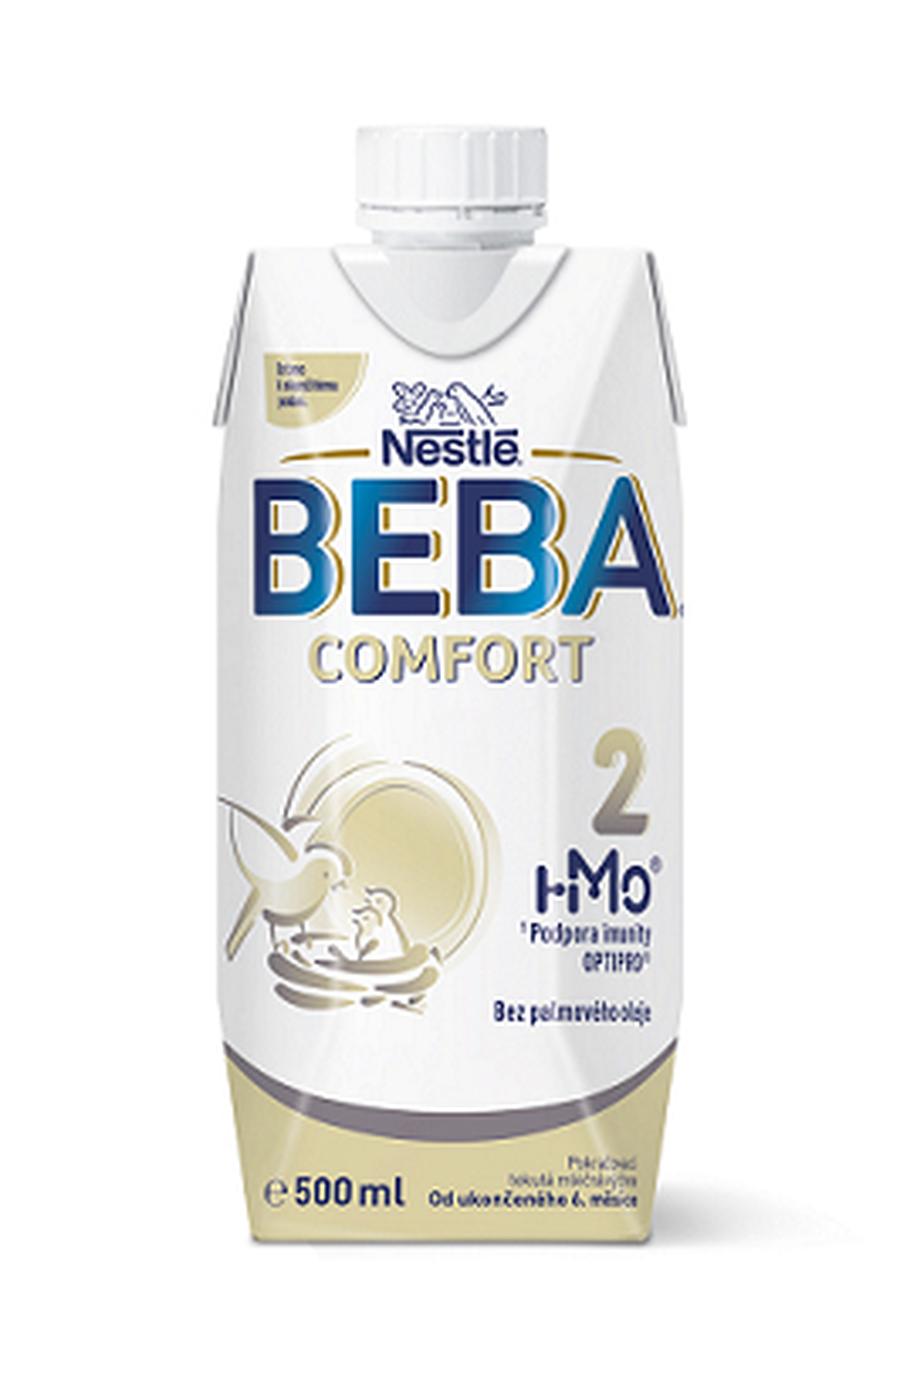 6x BEBA COMFORT 2 HM-O Tekutá 500ml - Pokračovací kojenecké mléko